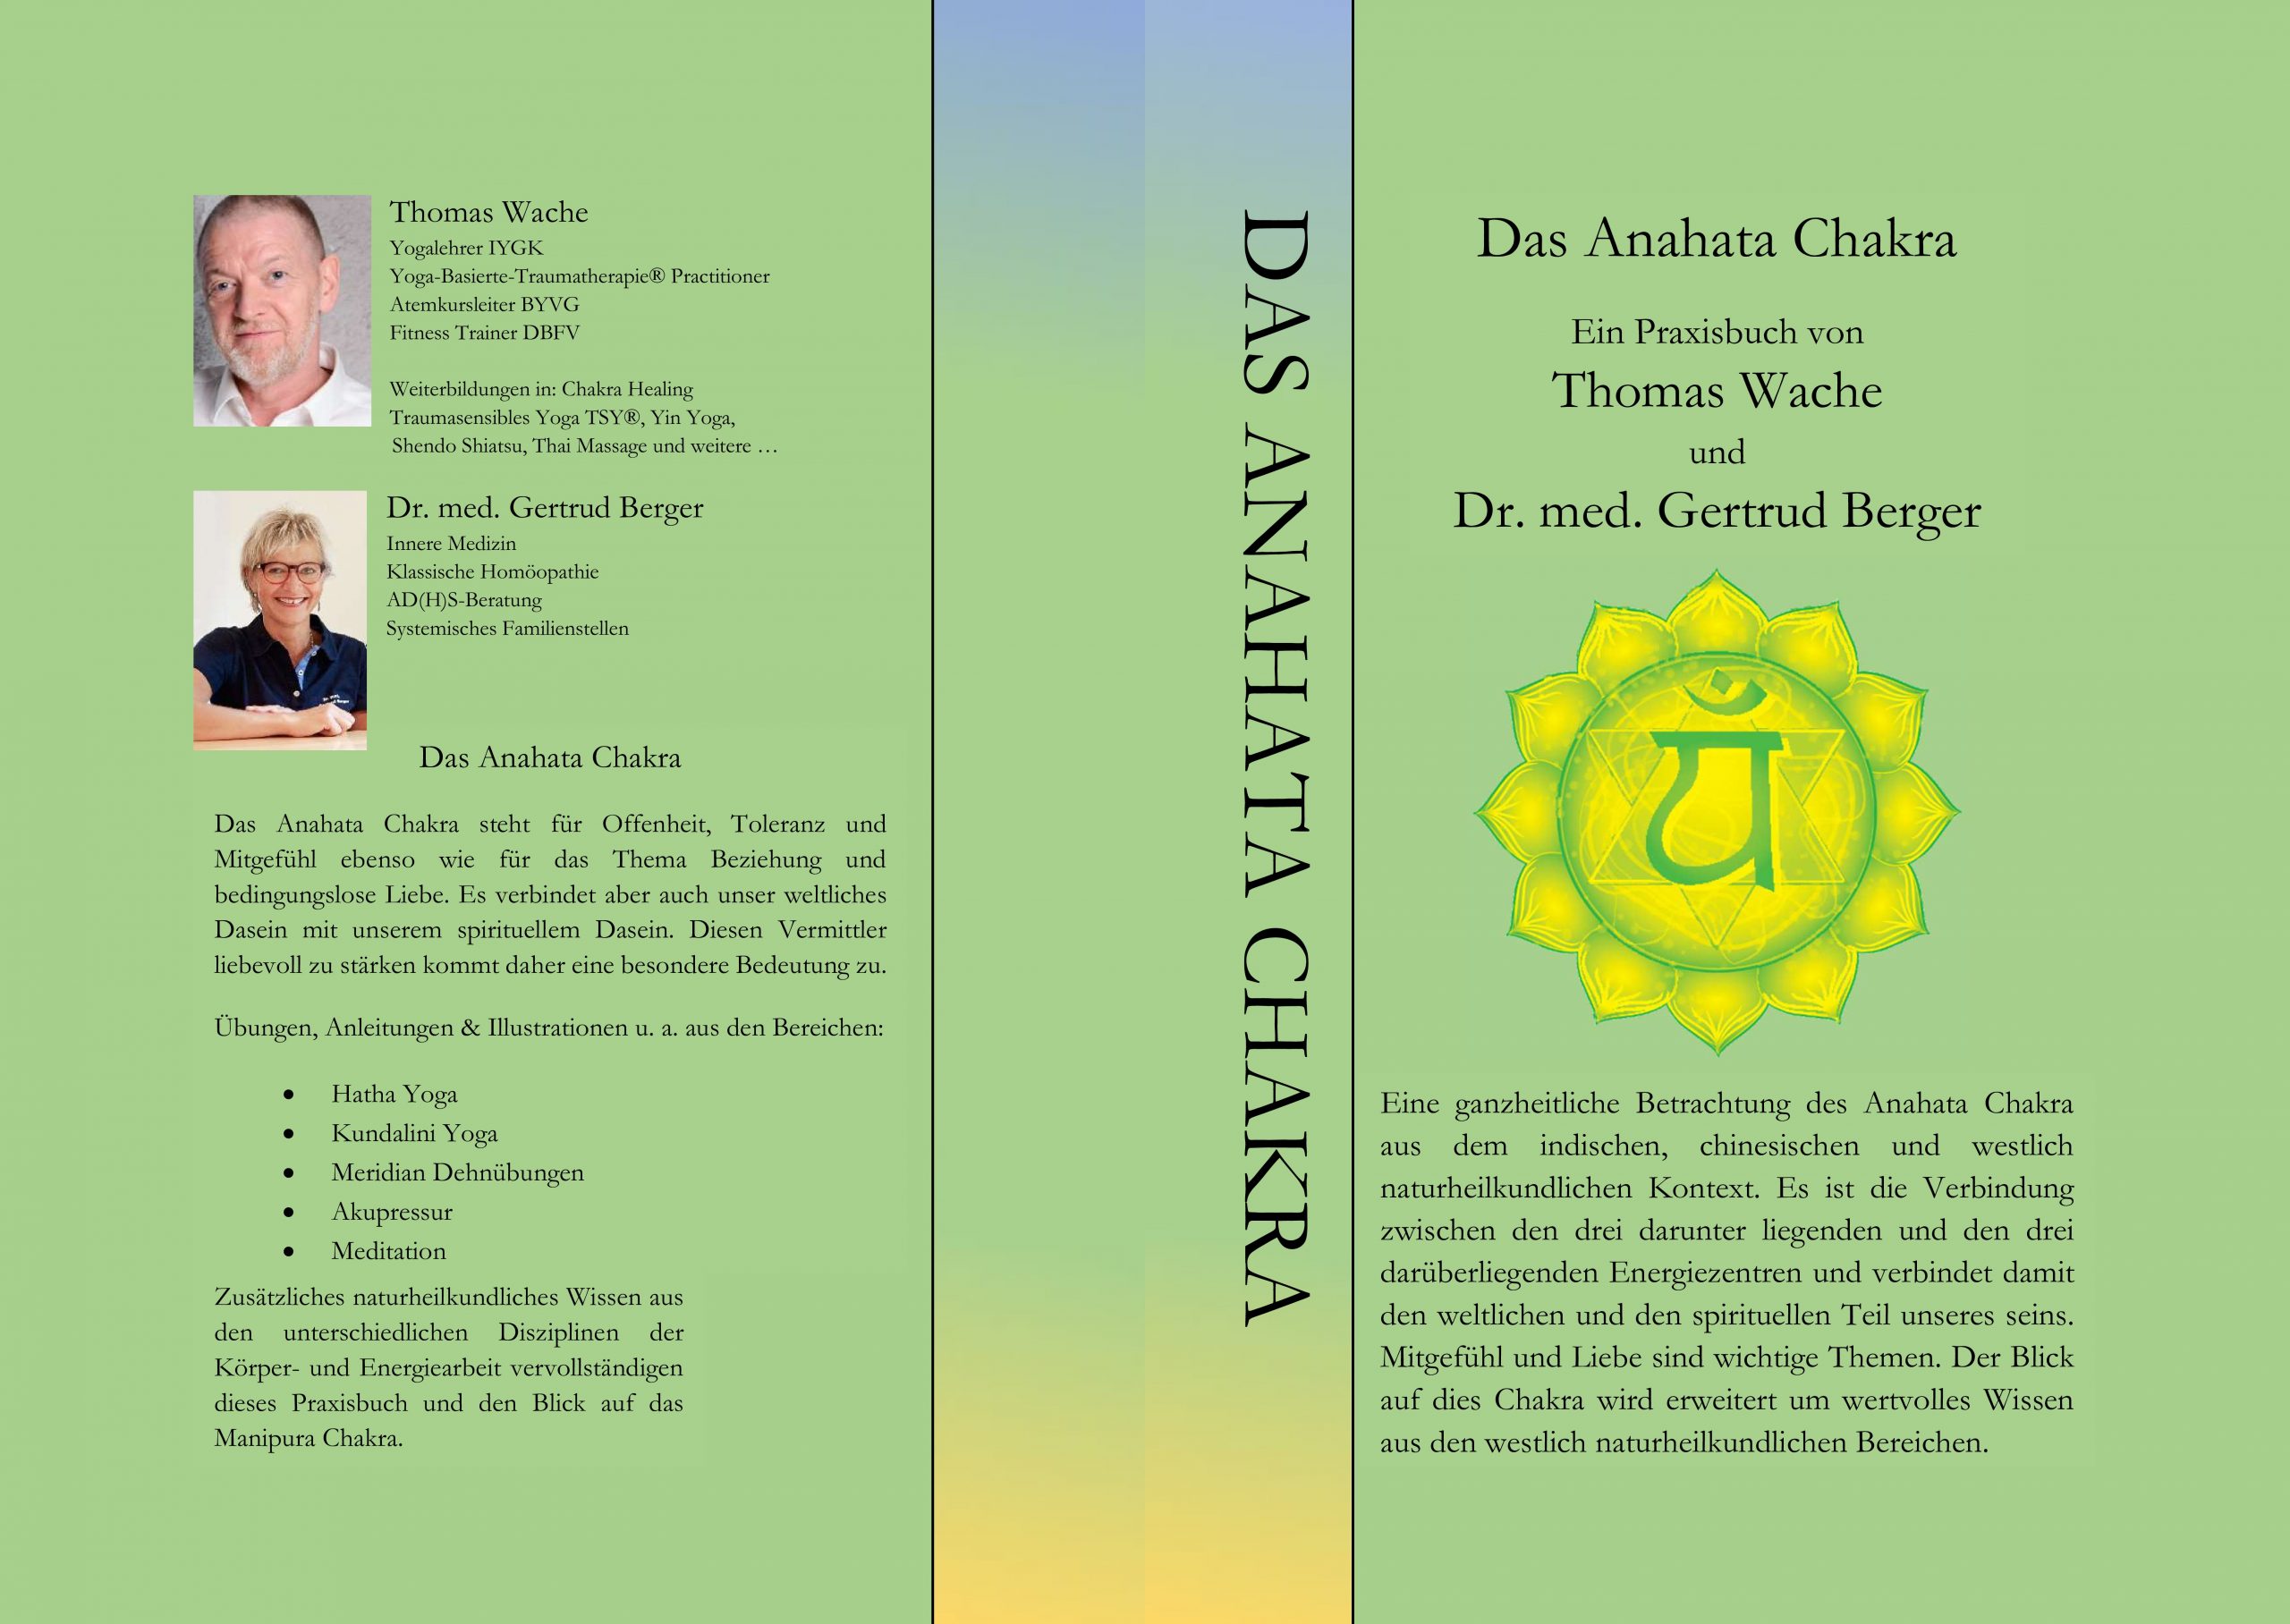 Das Anahata Chakra - Ein Praxisbuch von Thomas Wache und Dr. med. Gertrud Berger